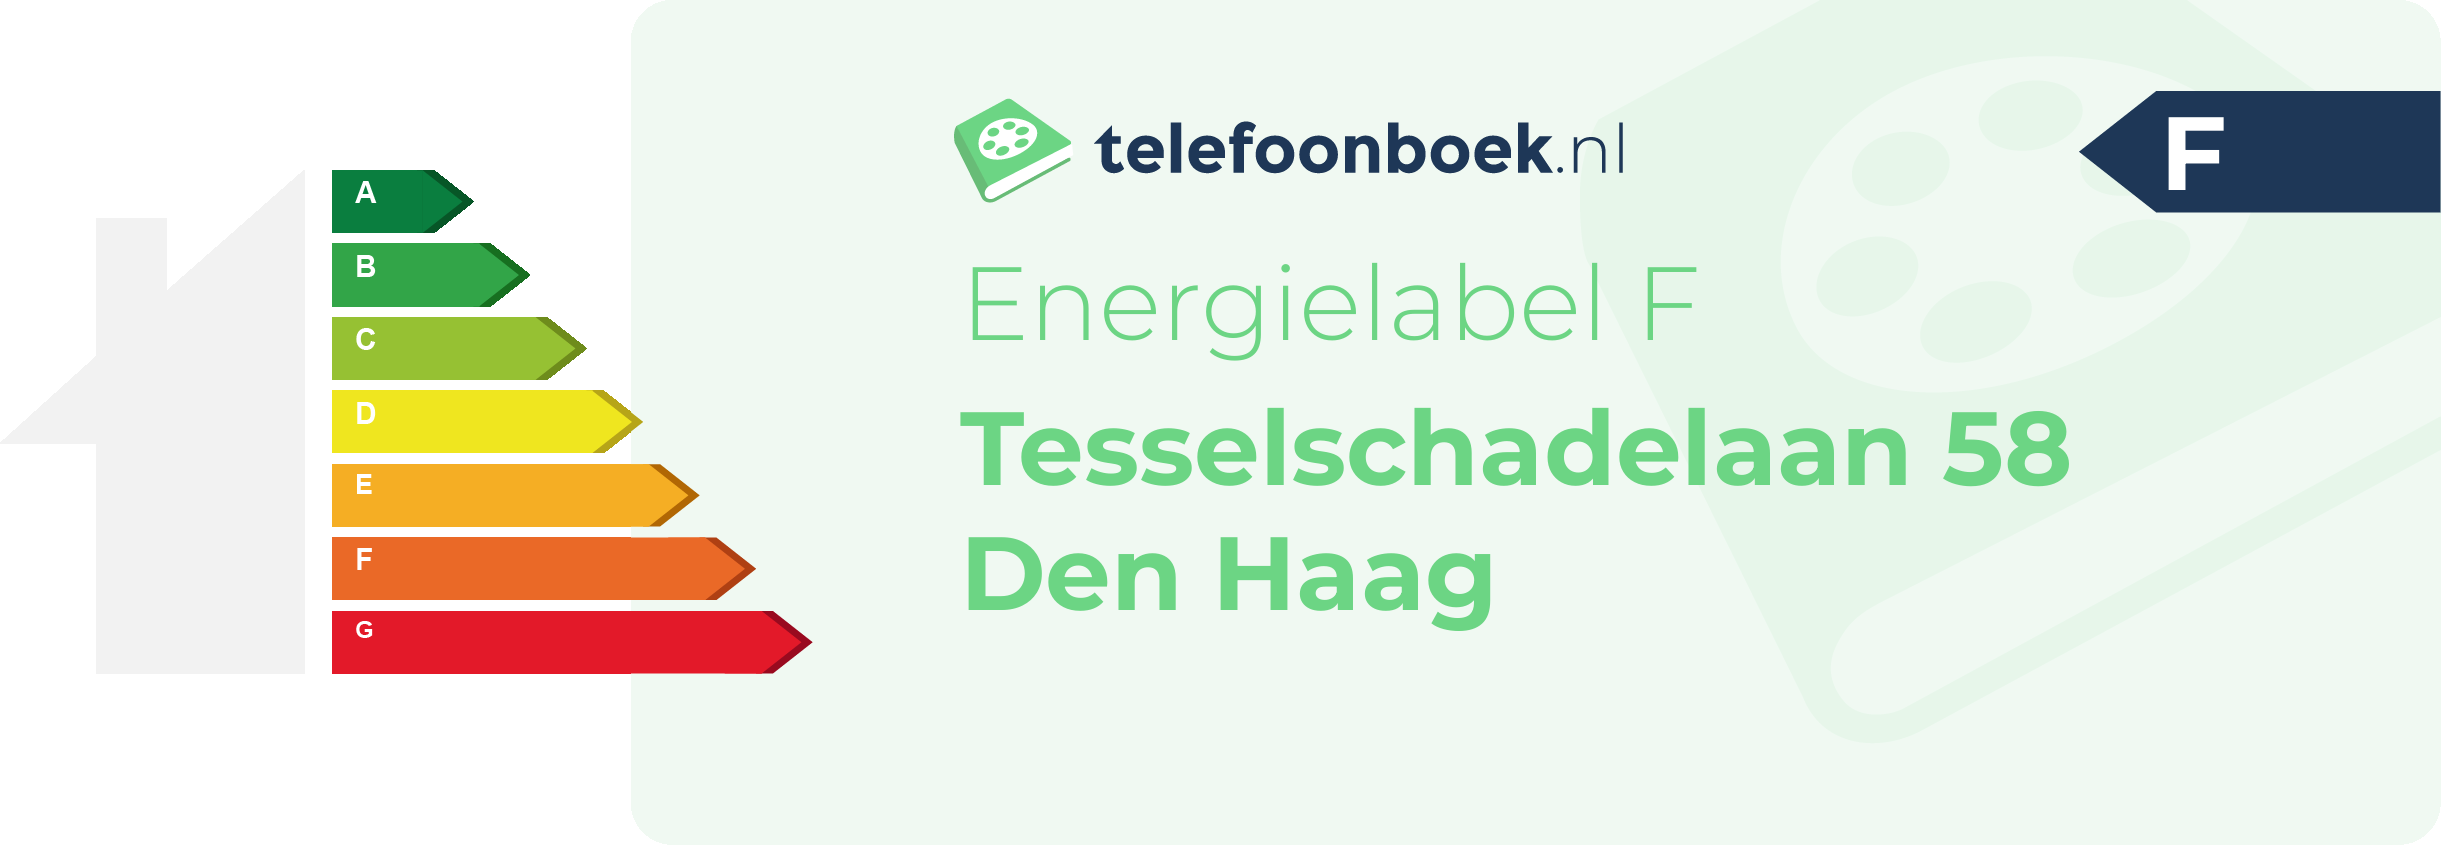 Energielabel Tesselschadelaan 58 Den Haag